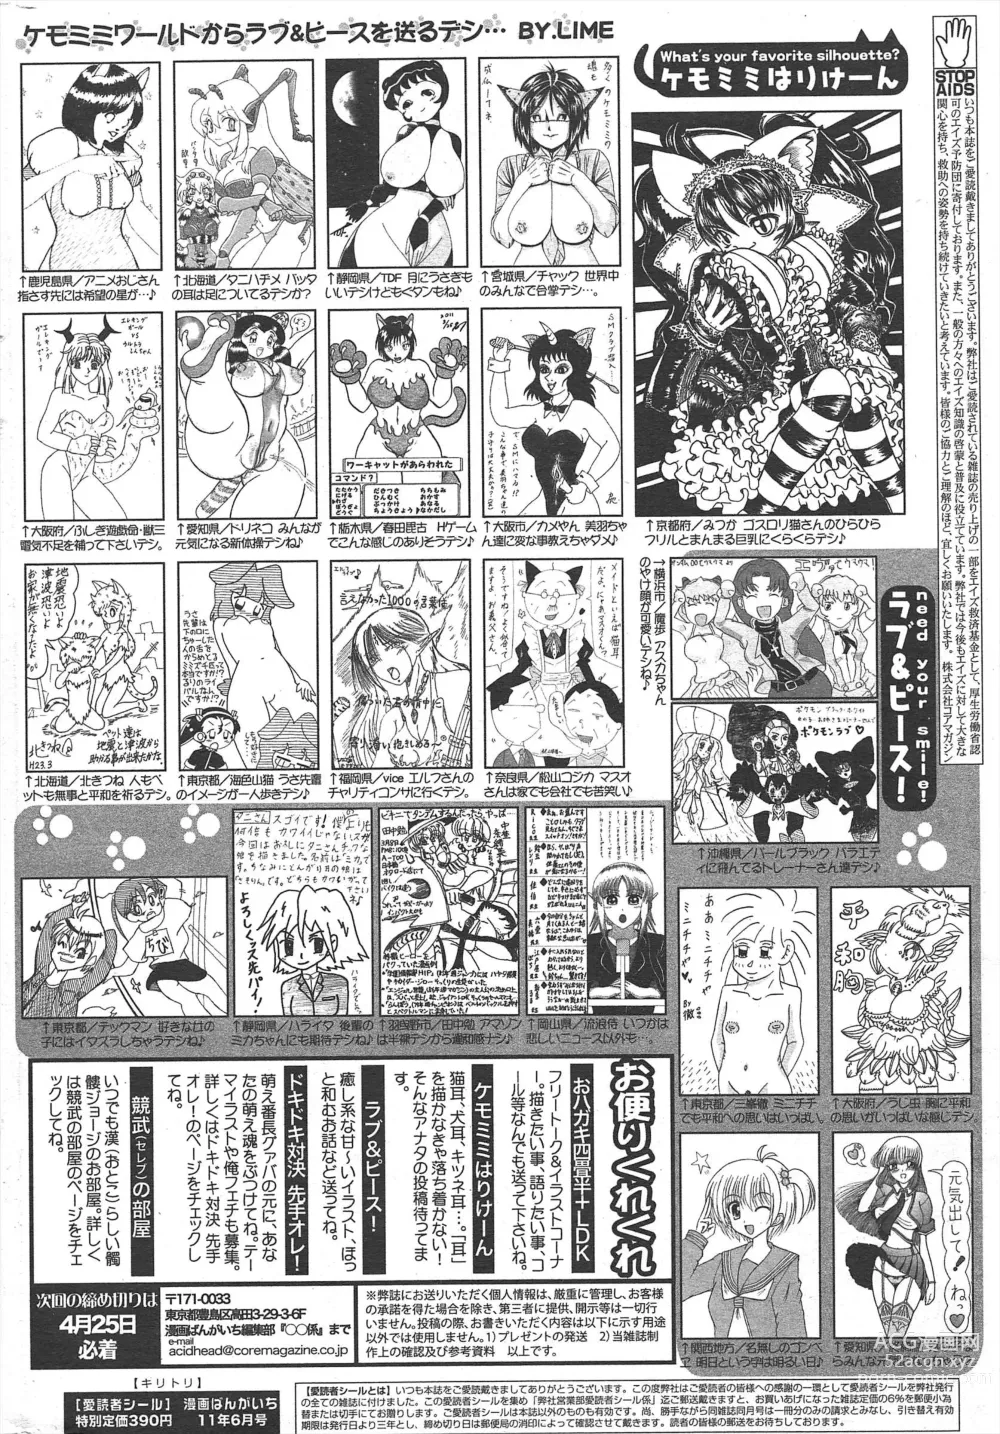 Page 261 of manga Manga Bangaichi 2011-06